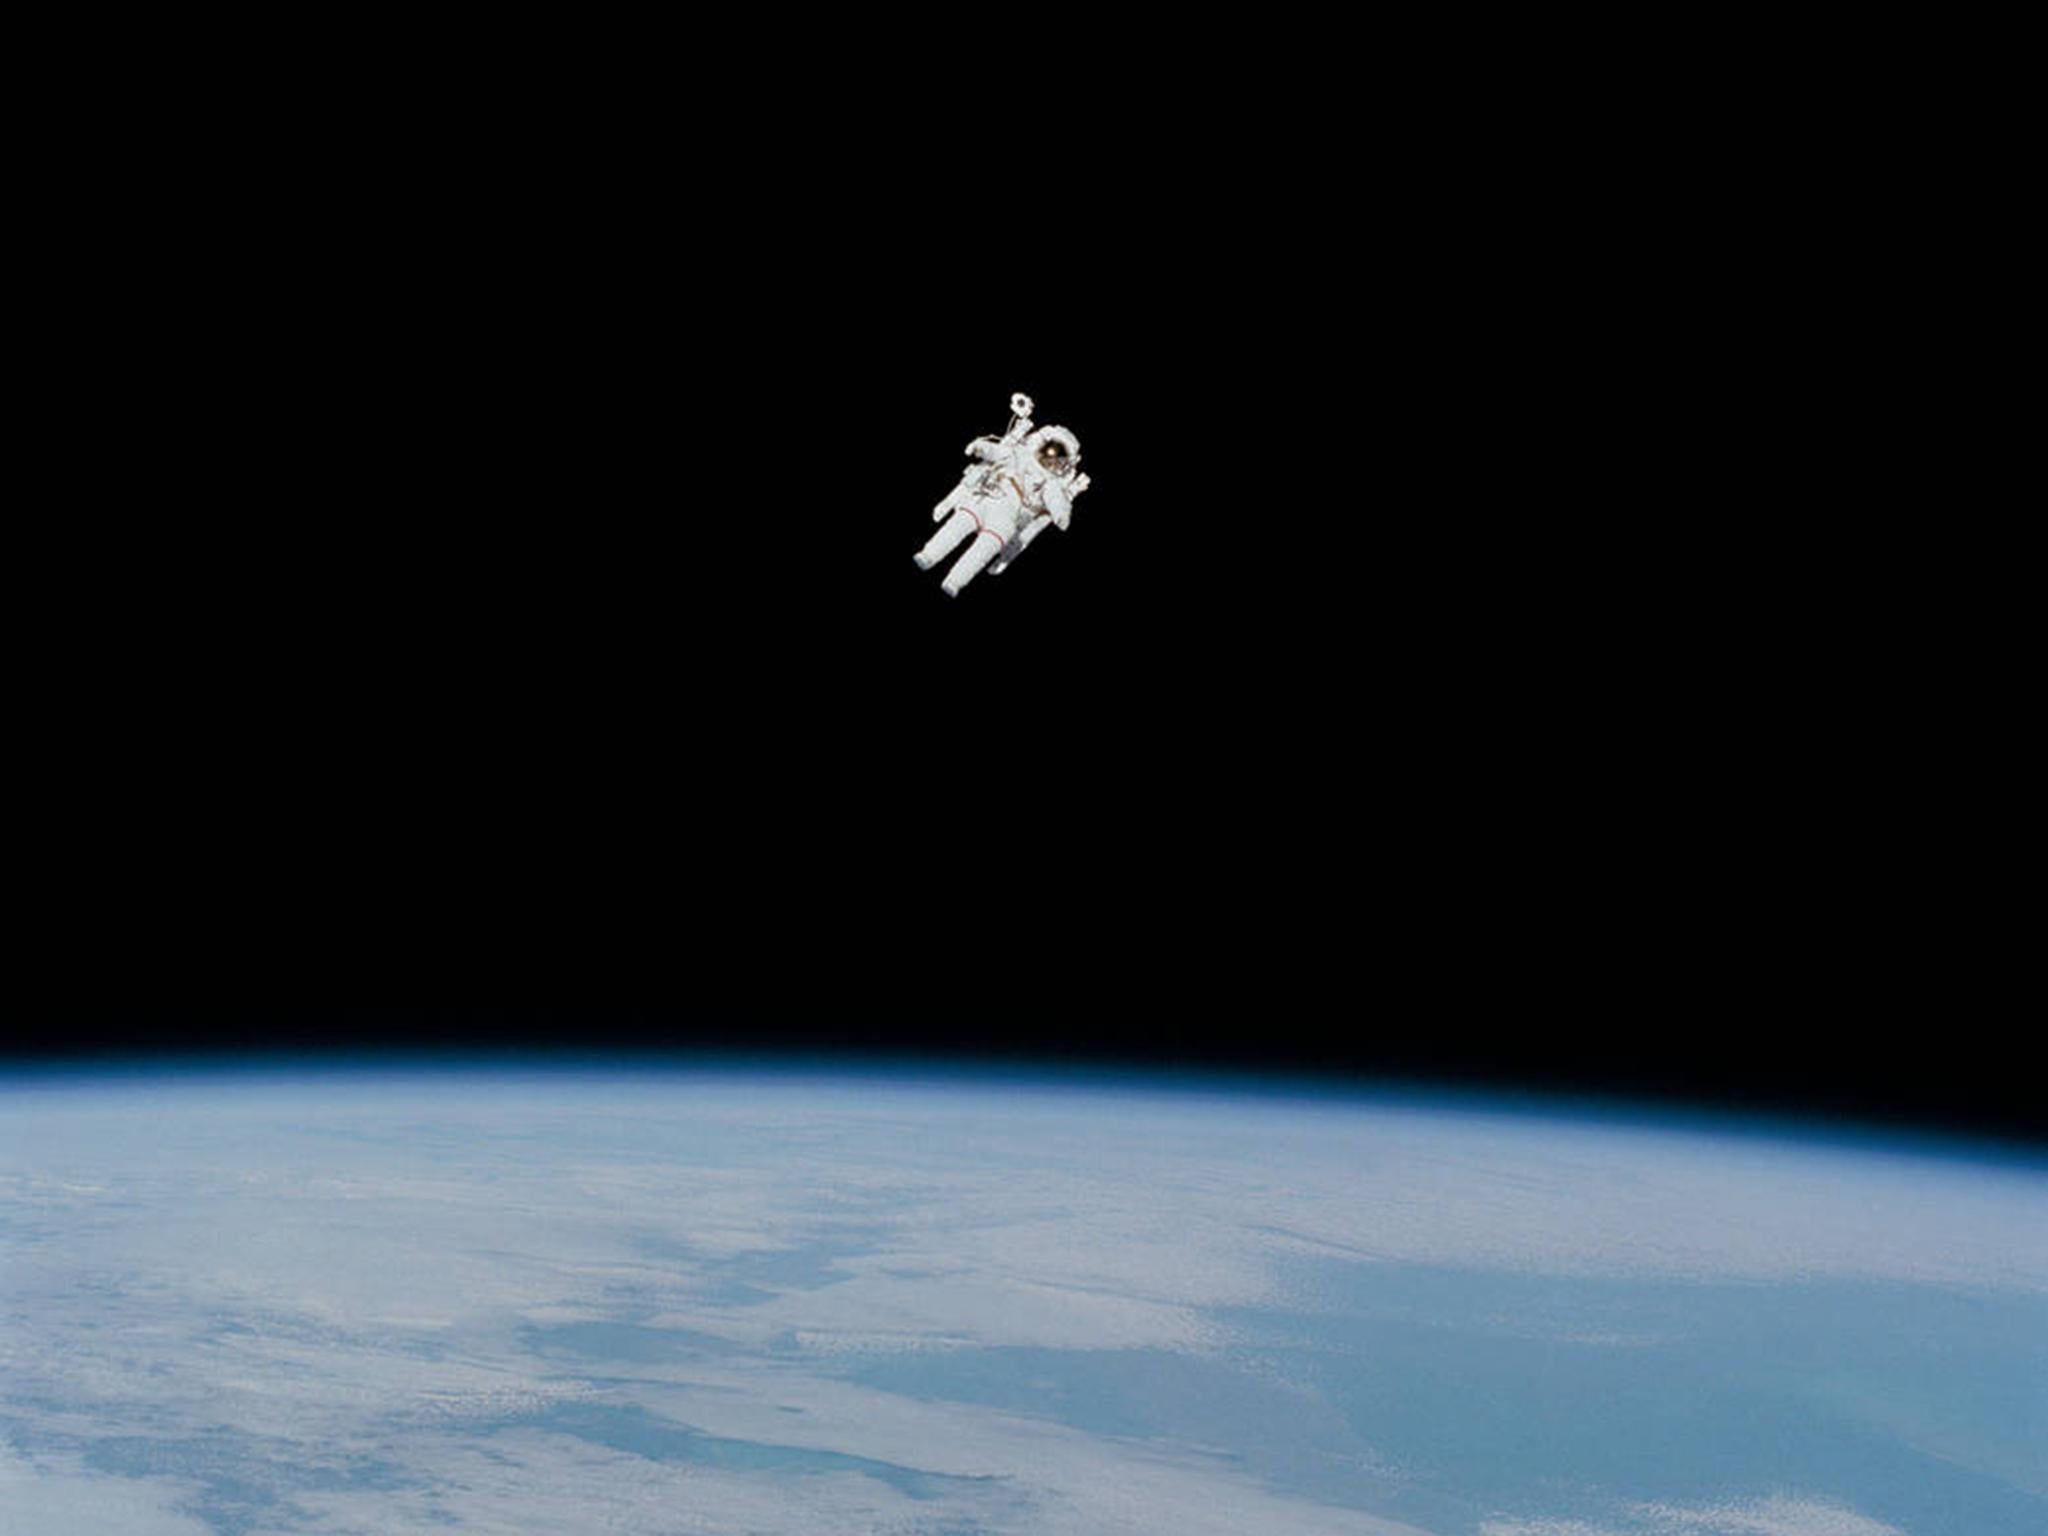 Nasa Celebrates 50 Years of Spacewalking